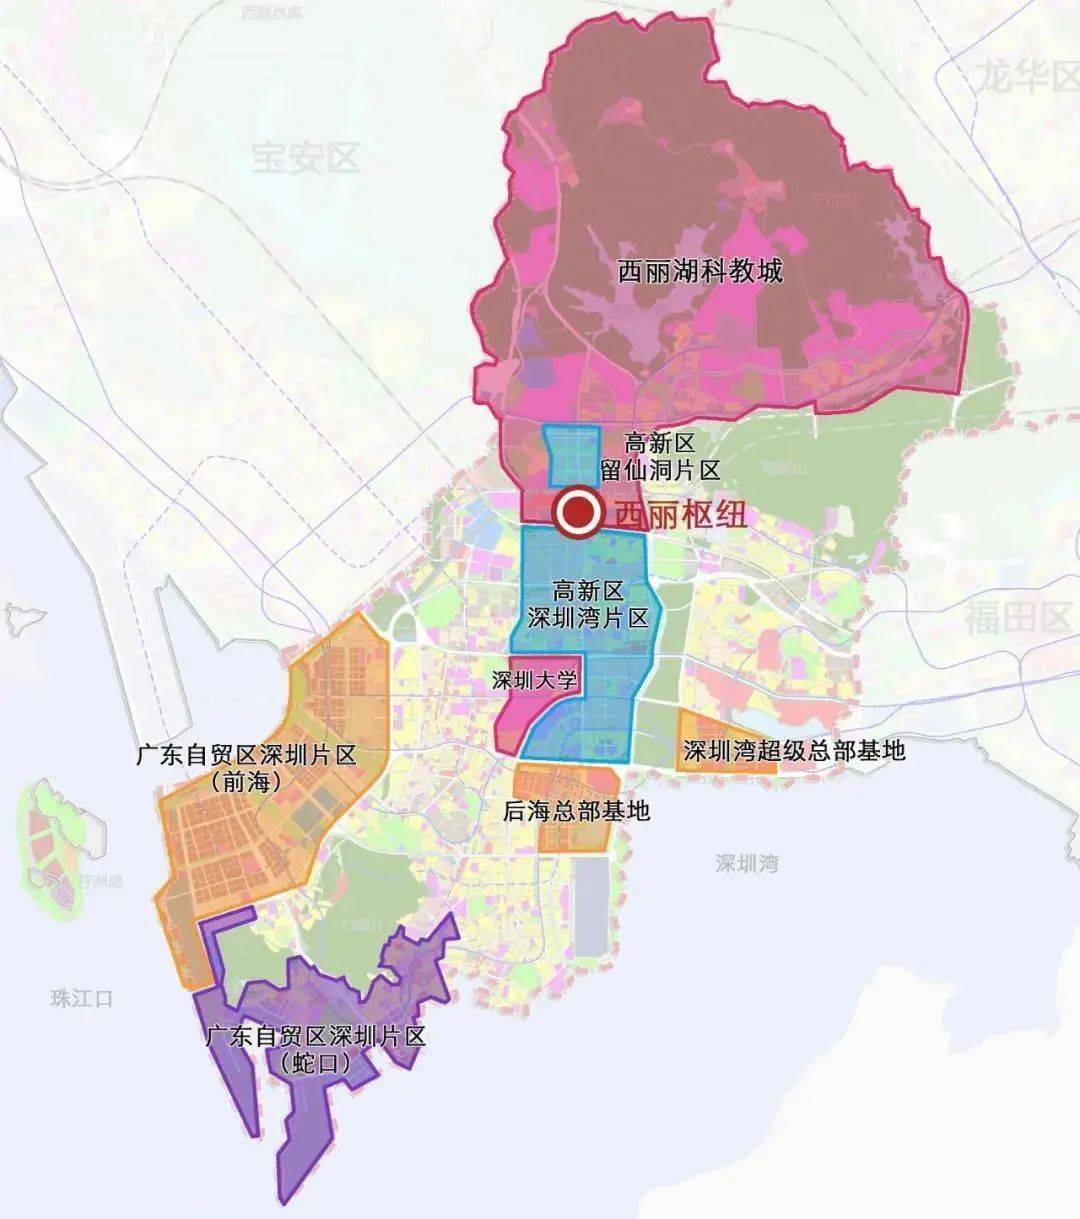 高新园串联西丽湖国际科教城它位于广深创新走廊的轴线图源:深圳新闻